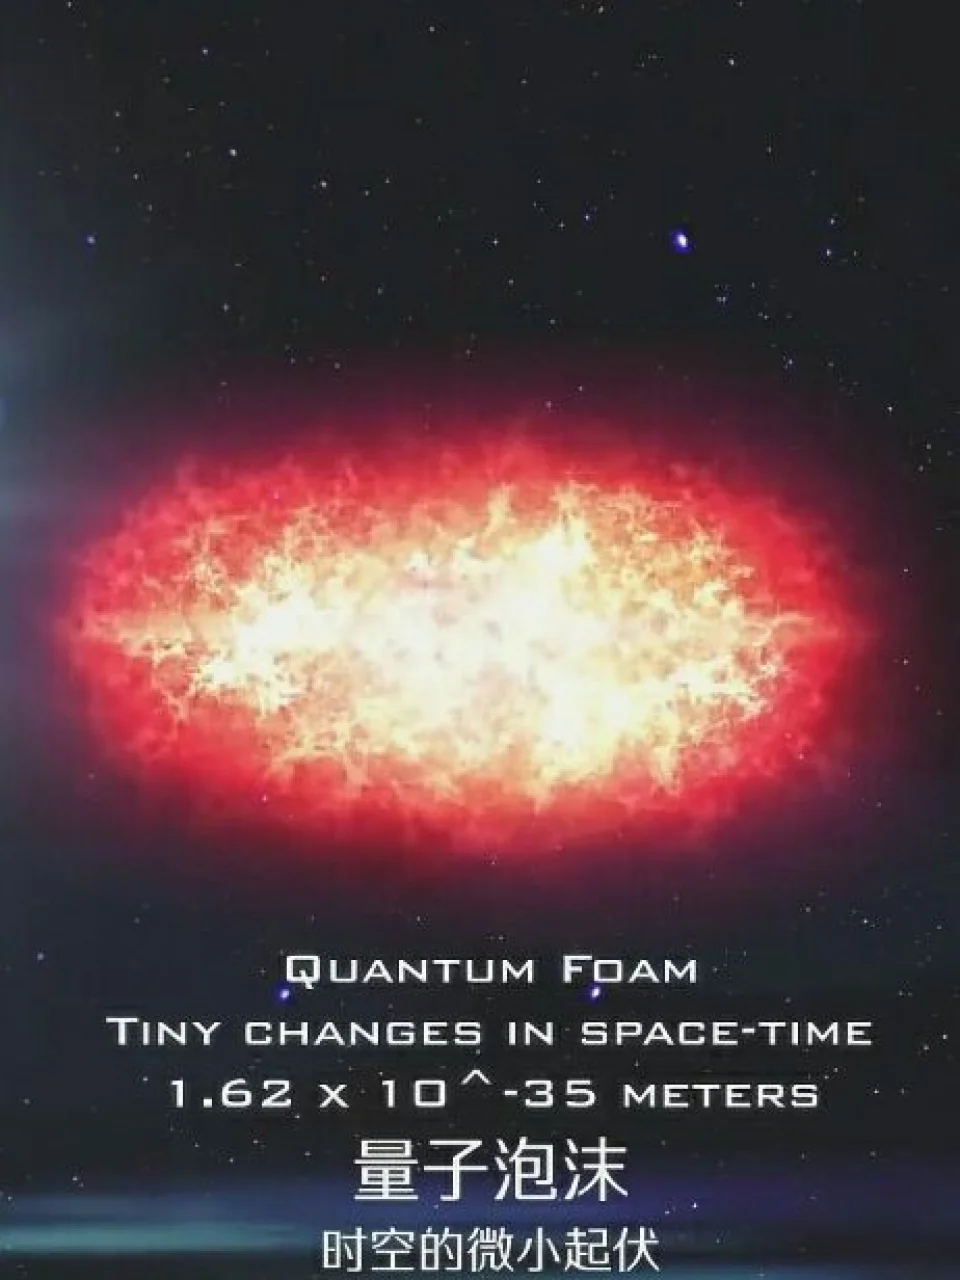 量子泡沫就是幼宇宙~